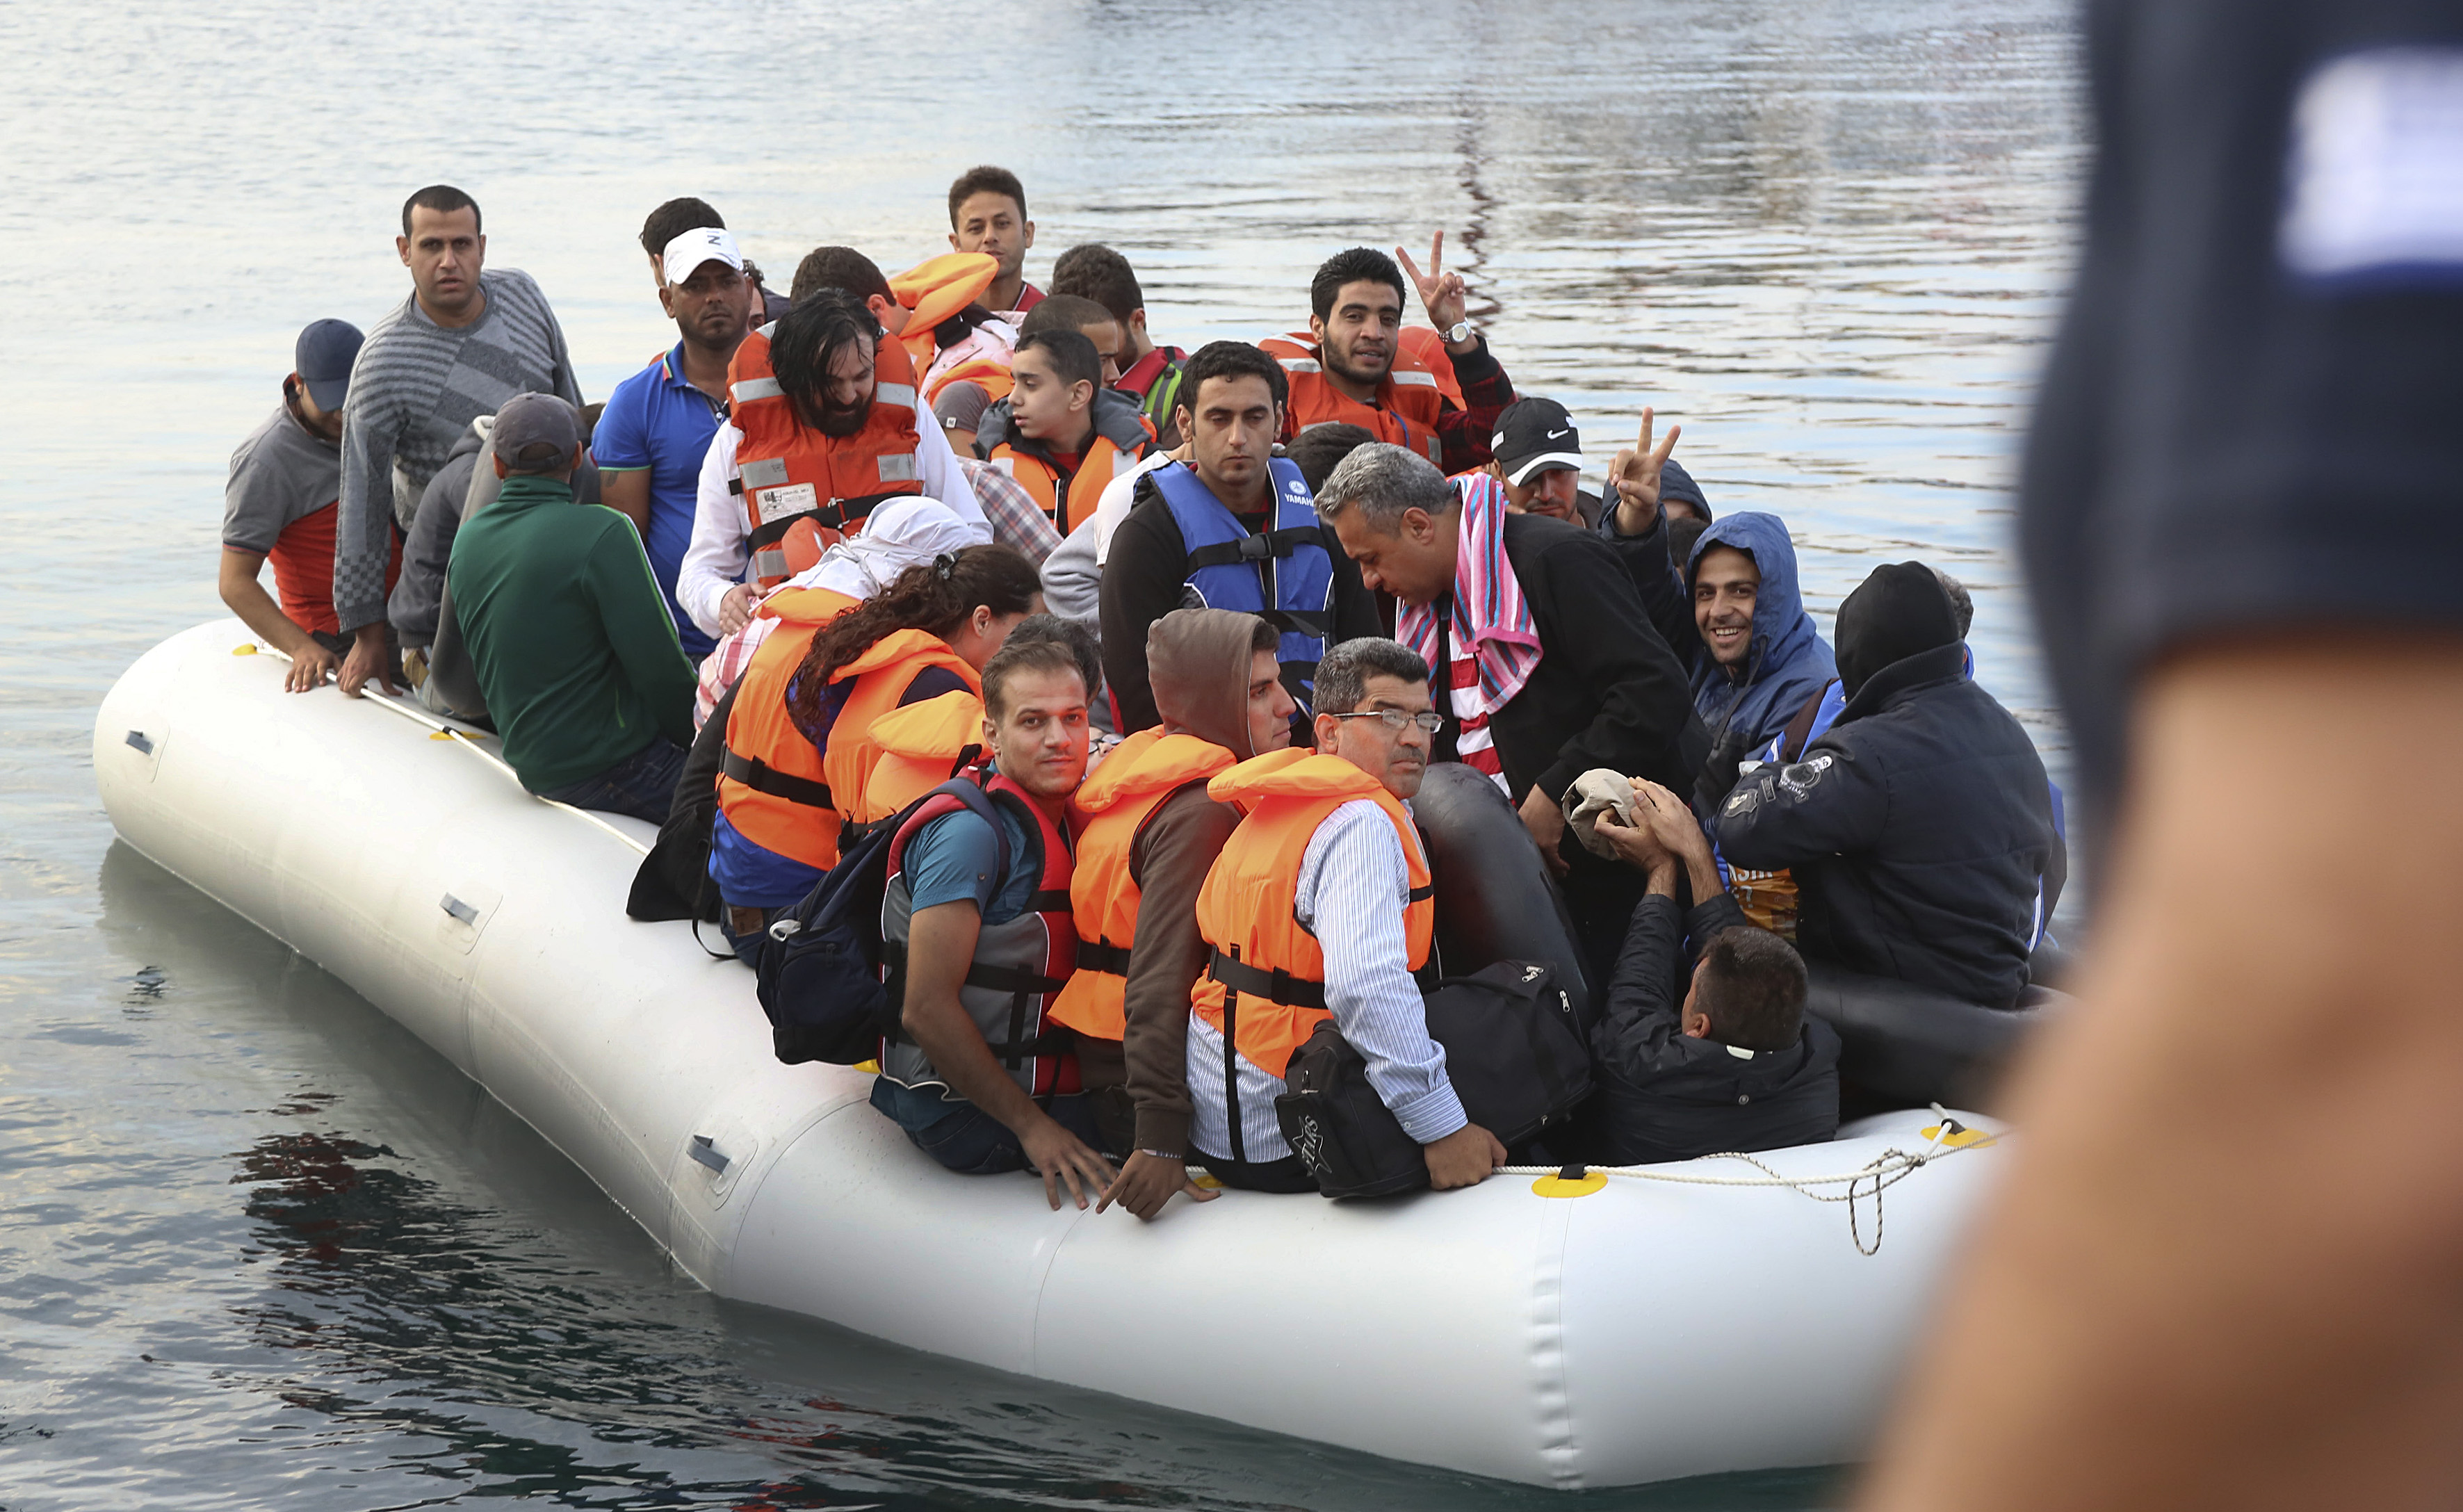 Δήμαρχος Λέσβου: Ζητά άδεια για ναύλωση πλοίου για μεταφορά προσφύγων